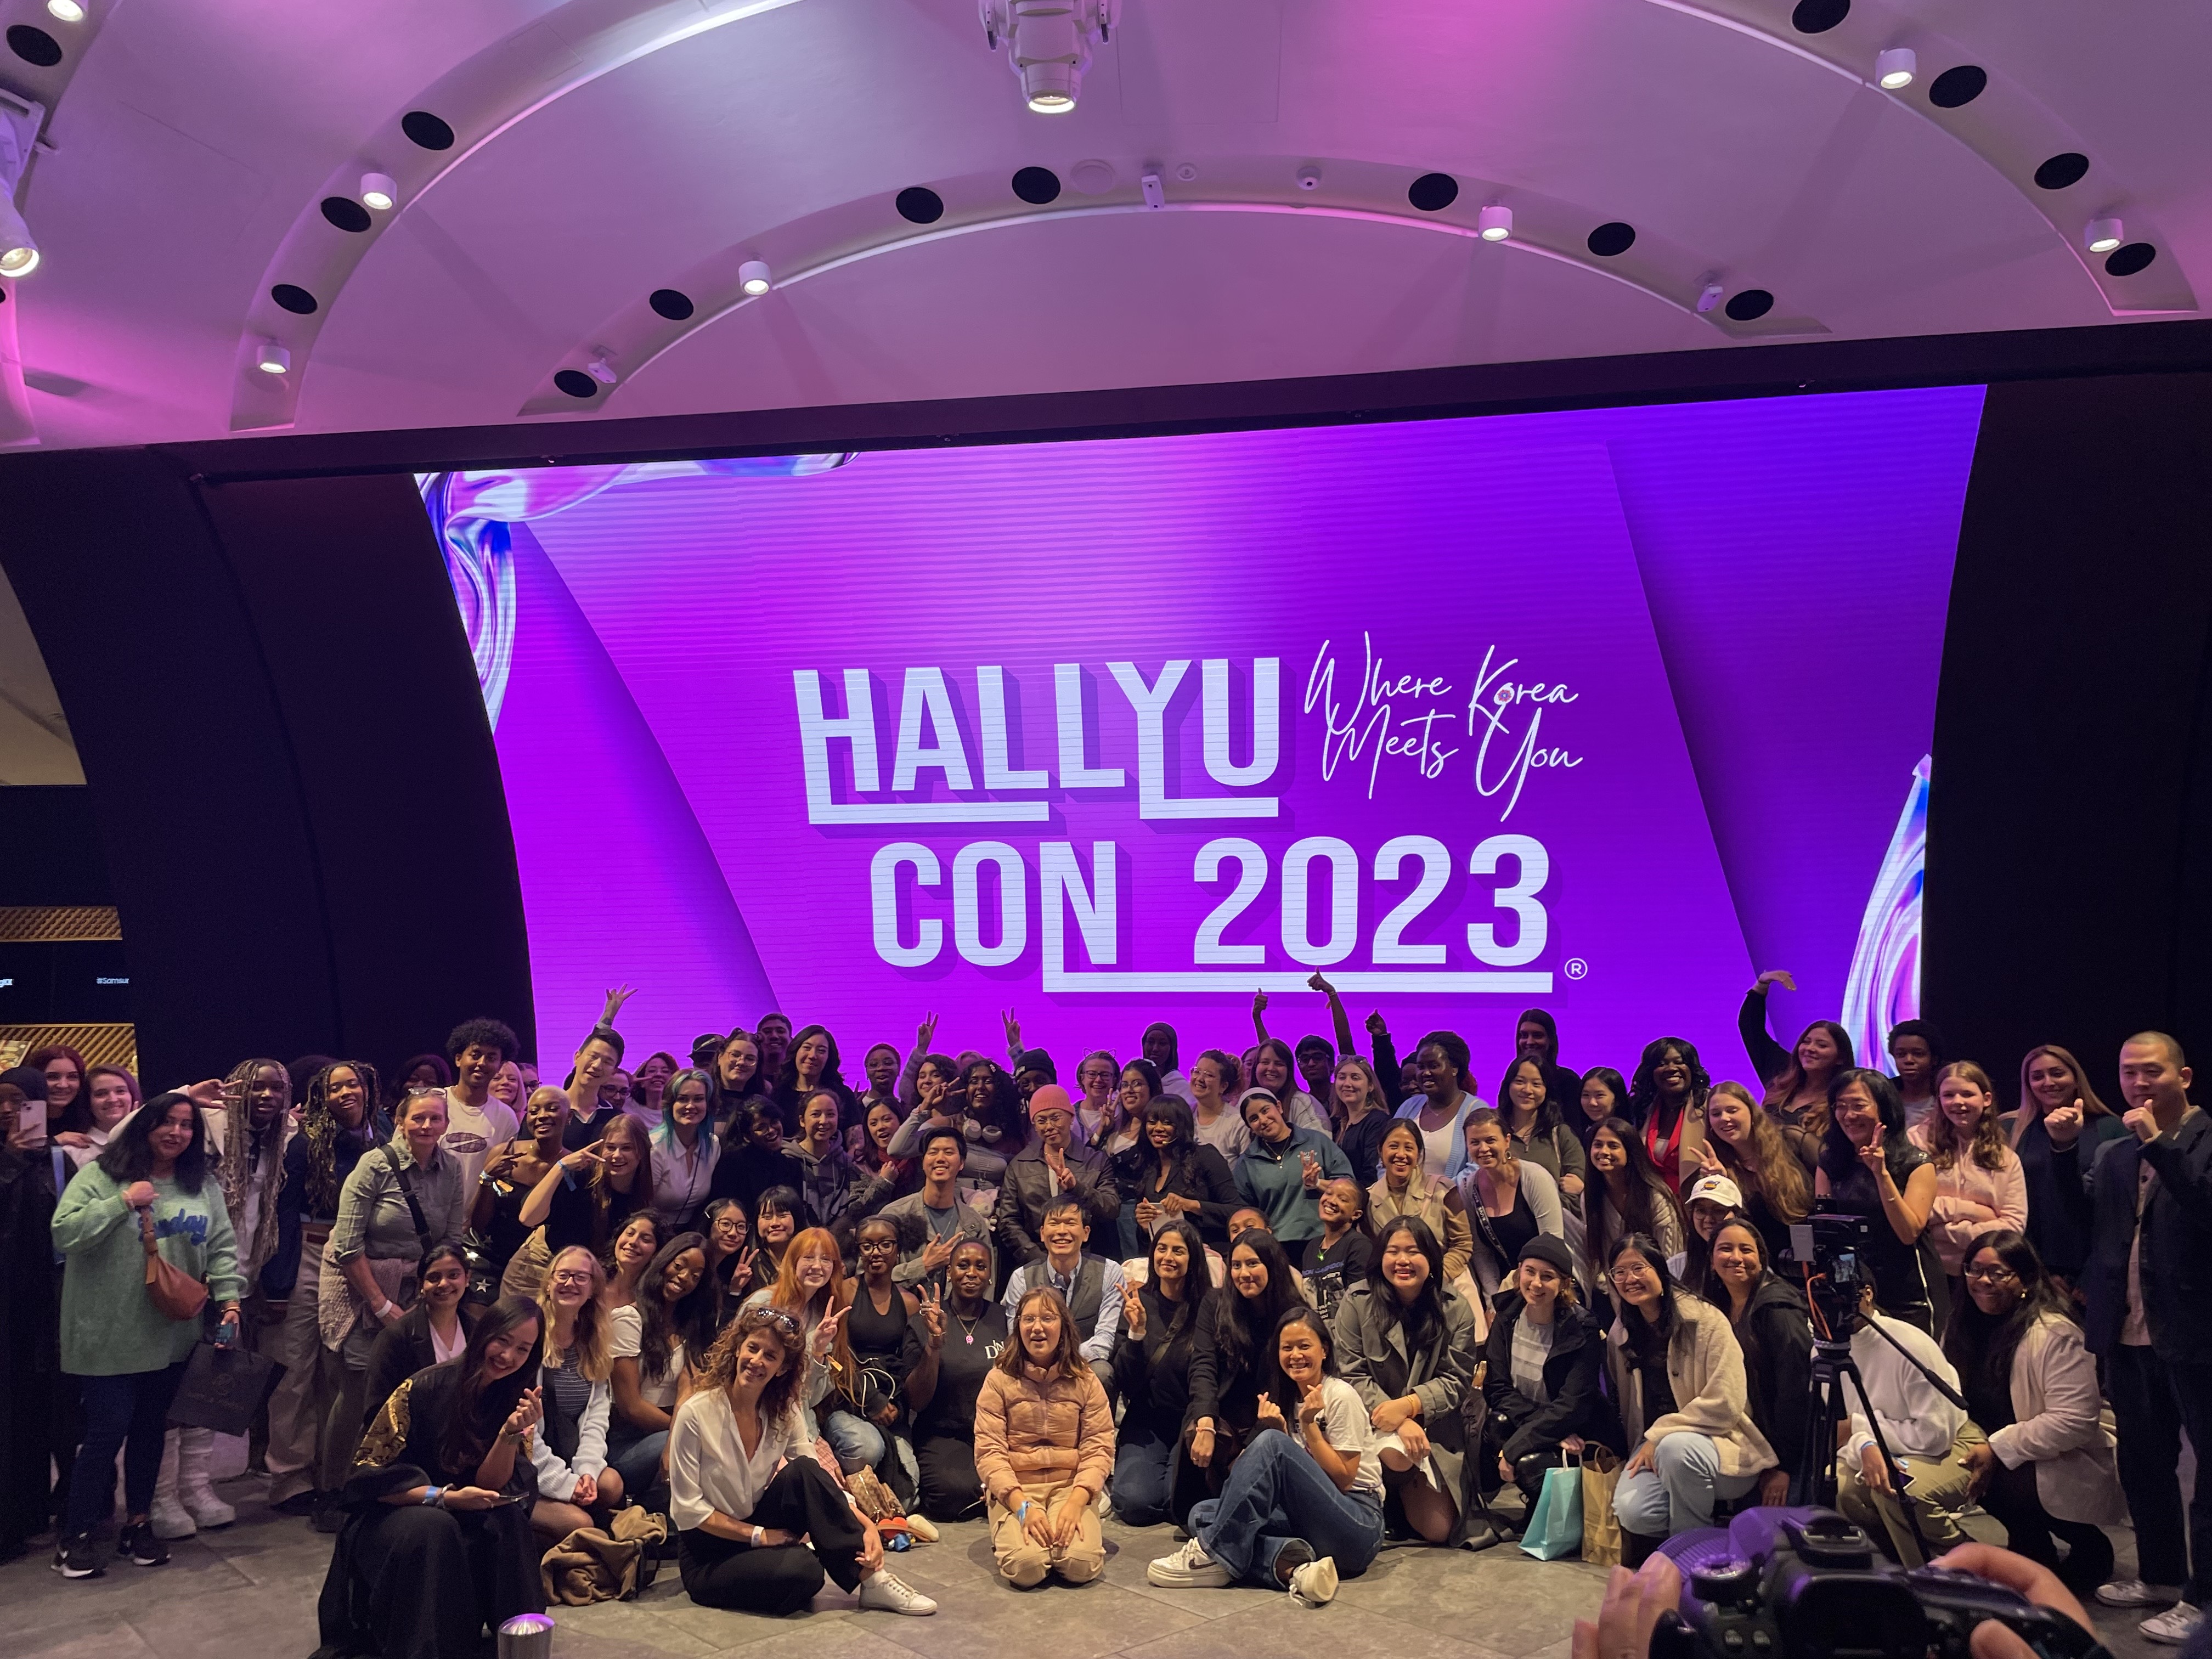 < '한류콘 2023(Hallyu-Con 2023)' 행사 후 기념 촬영 - 출처: 통신원 촬영 >